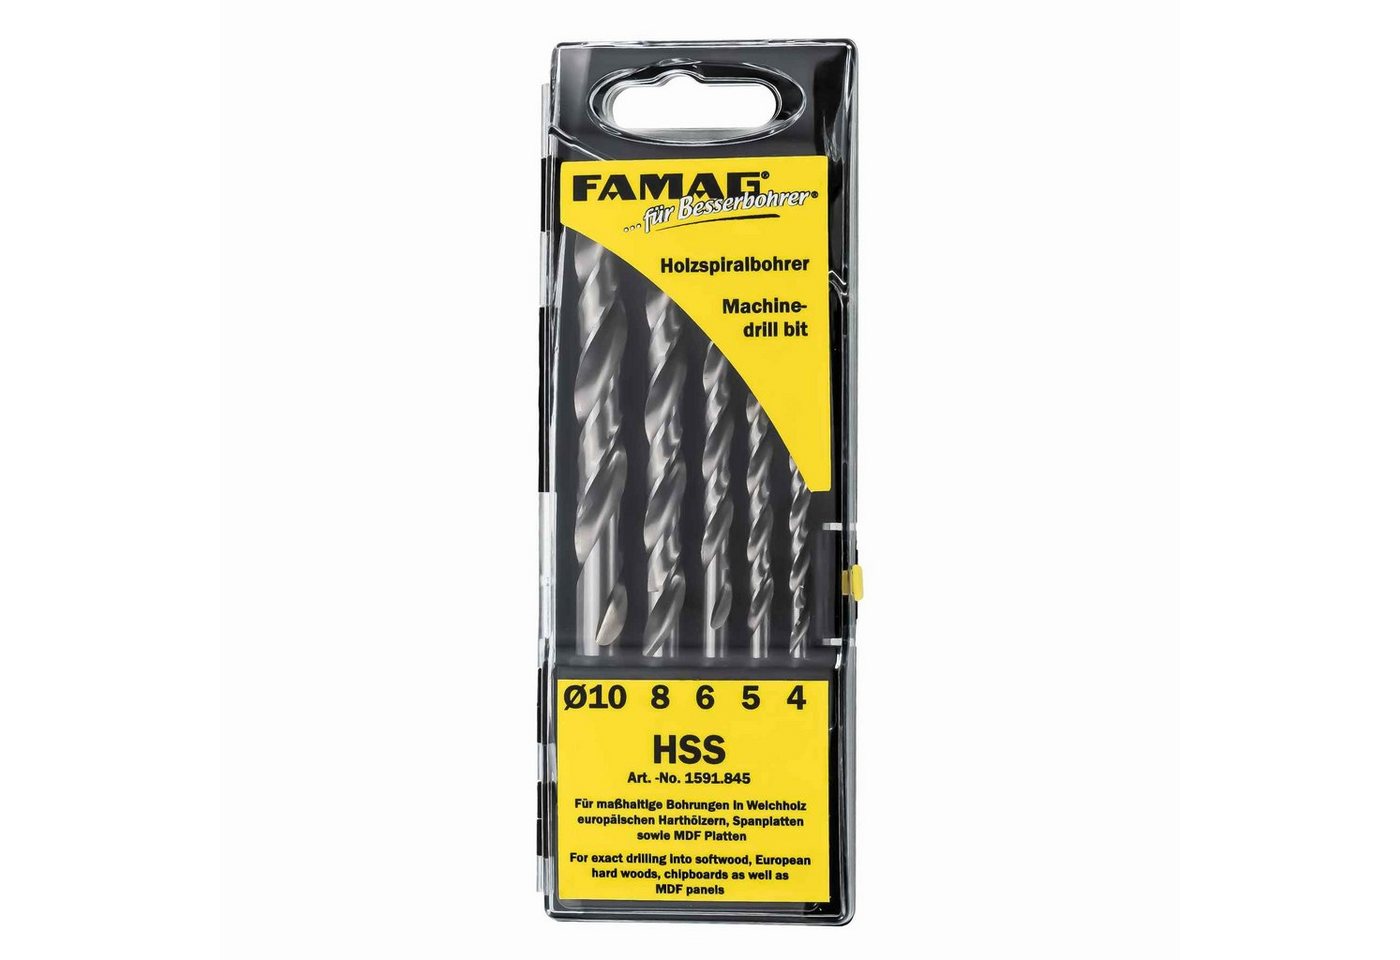 FAMAG Holzbohrer »Famag Holzspiralbohrersatz HSS 5-tlg. D=4 bis 10mm« von FAMAG